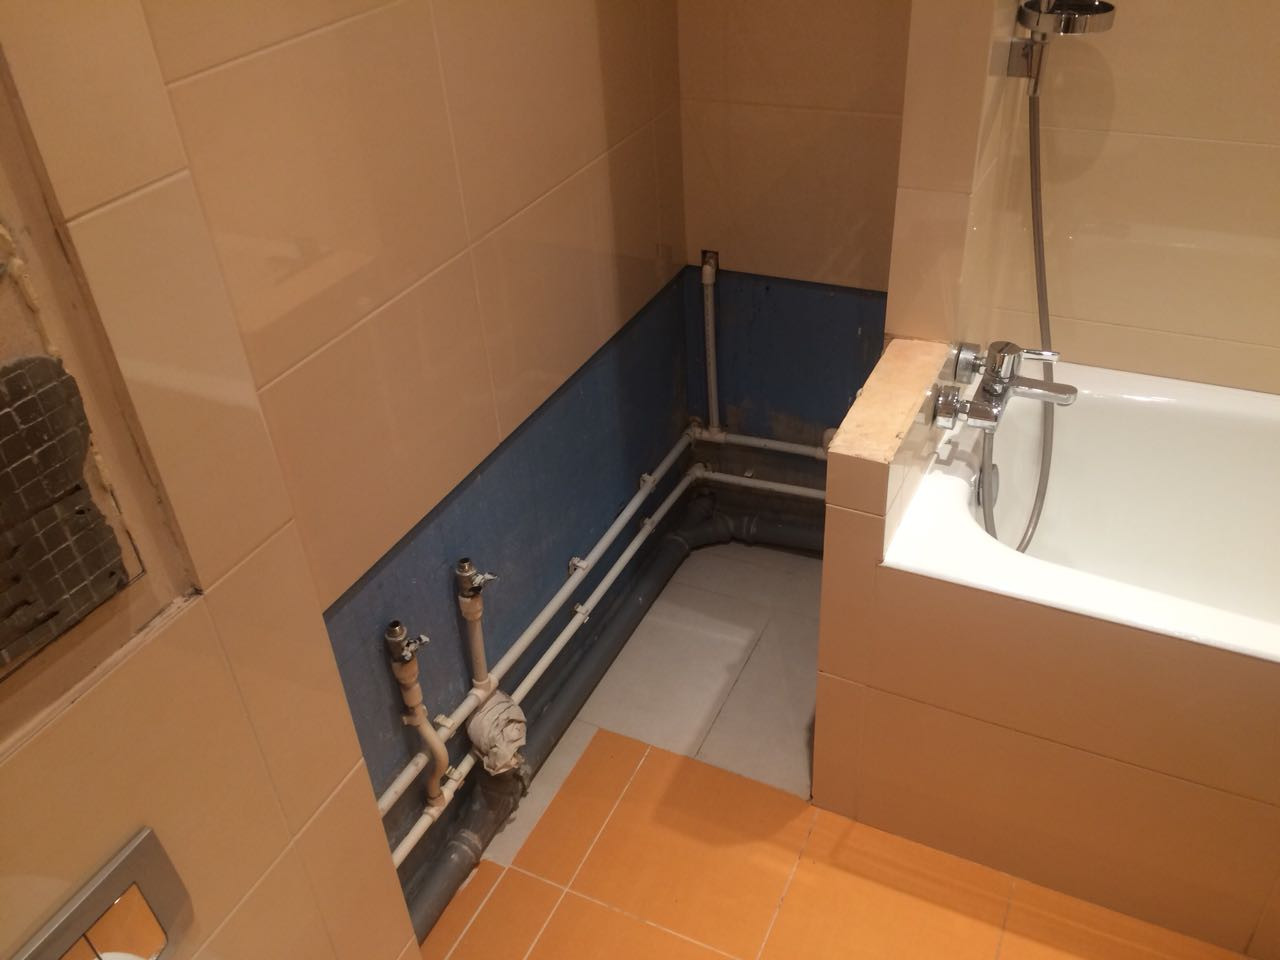 До монтажа столешницы в ванную комнату: видна нестандартная планировка помещения